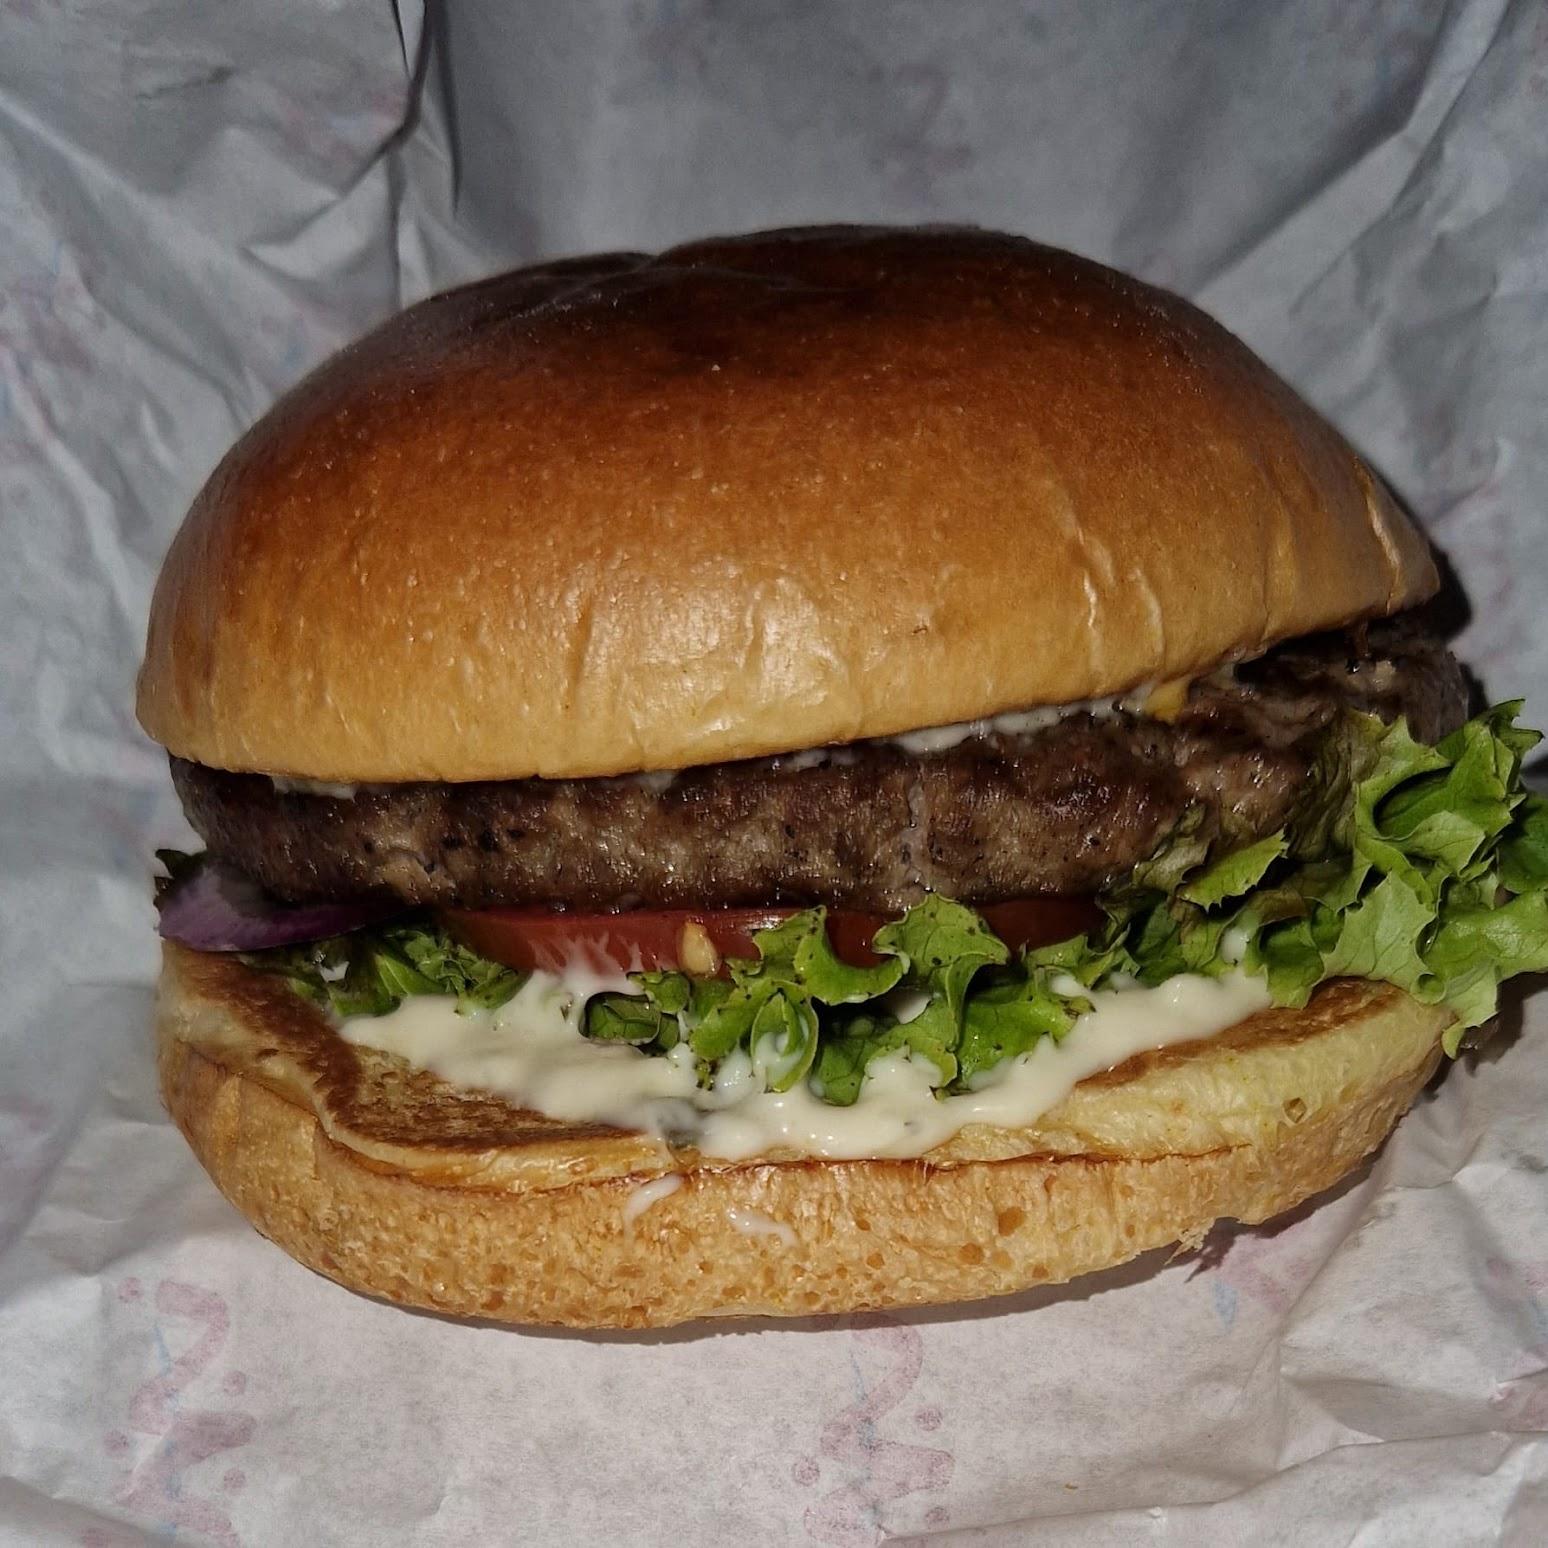 Restaurant "Burger mit Glücks" in Buxtehude